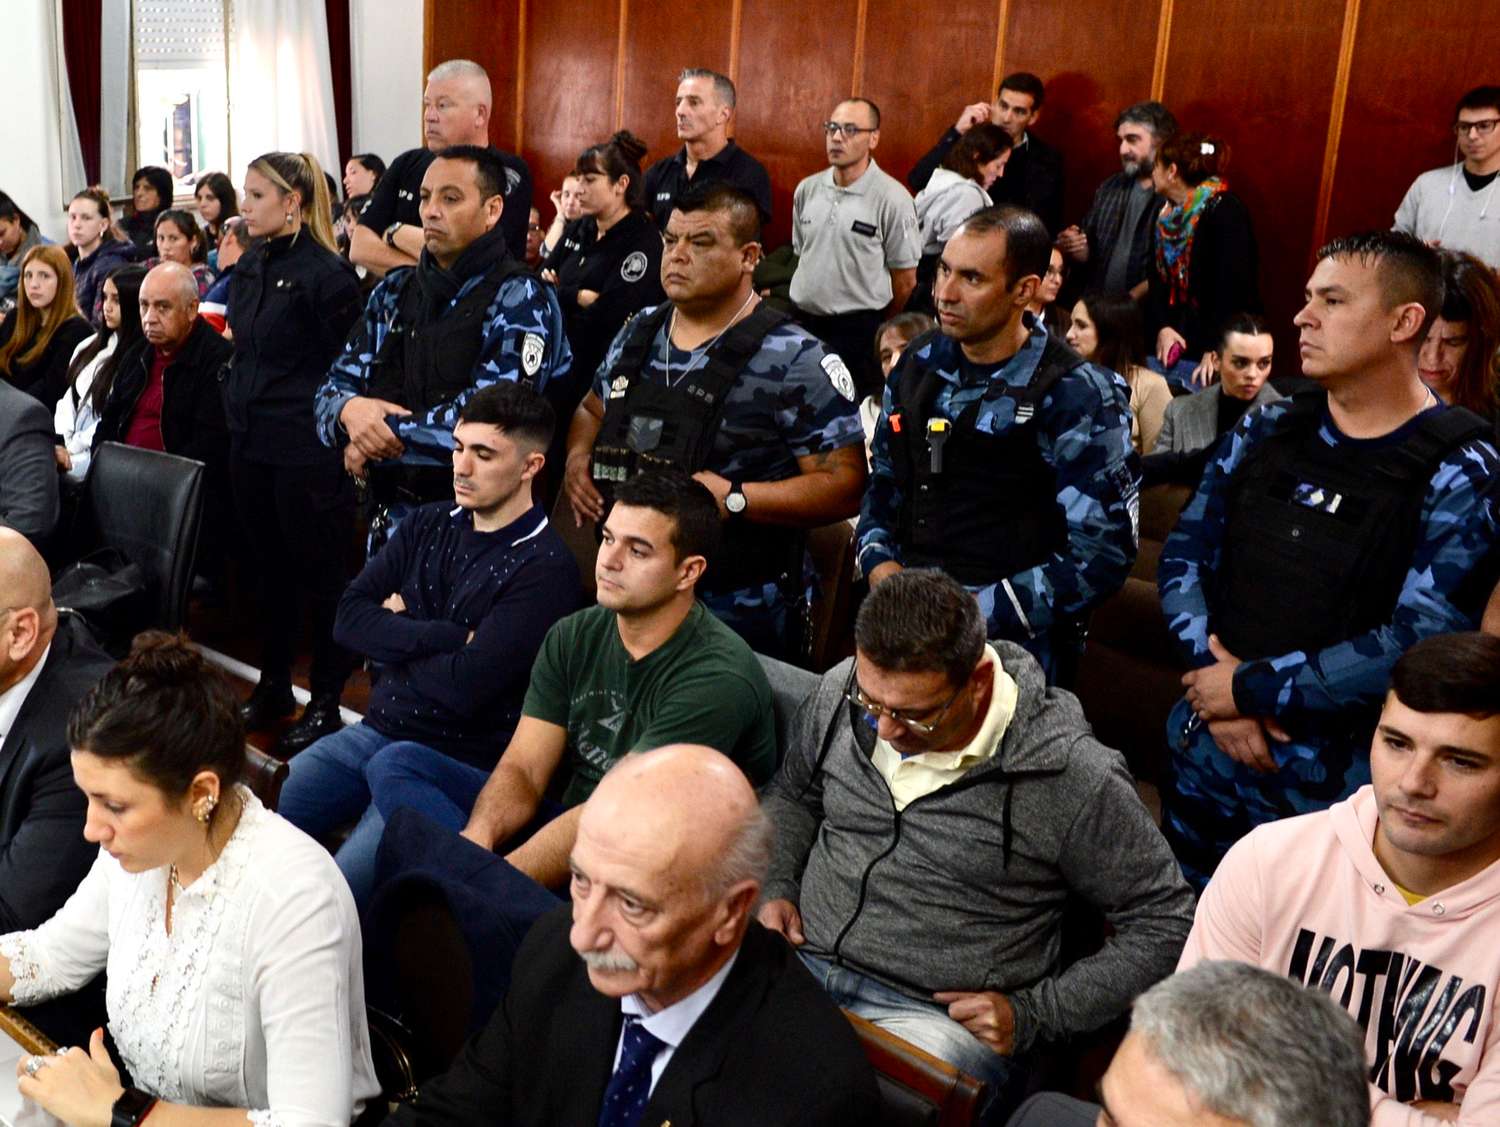 La jueza Carolina Crispiani, a cargo del Tribunal Oral en lo Criminal  4 de La Plata confirmará en los próximos días la sentencia definitiva para los policías declarados culpables.